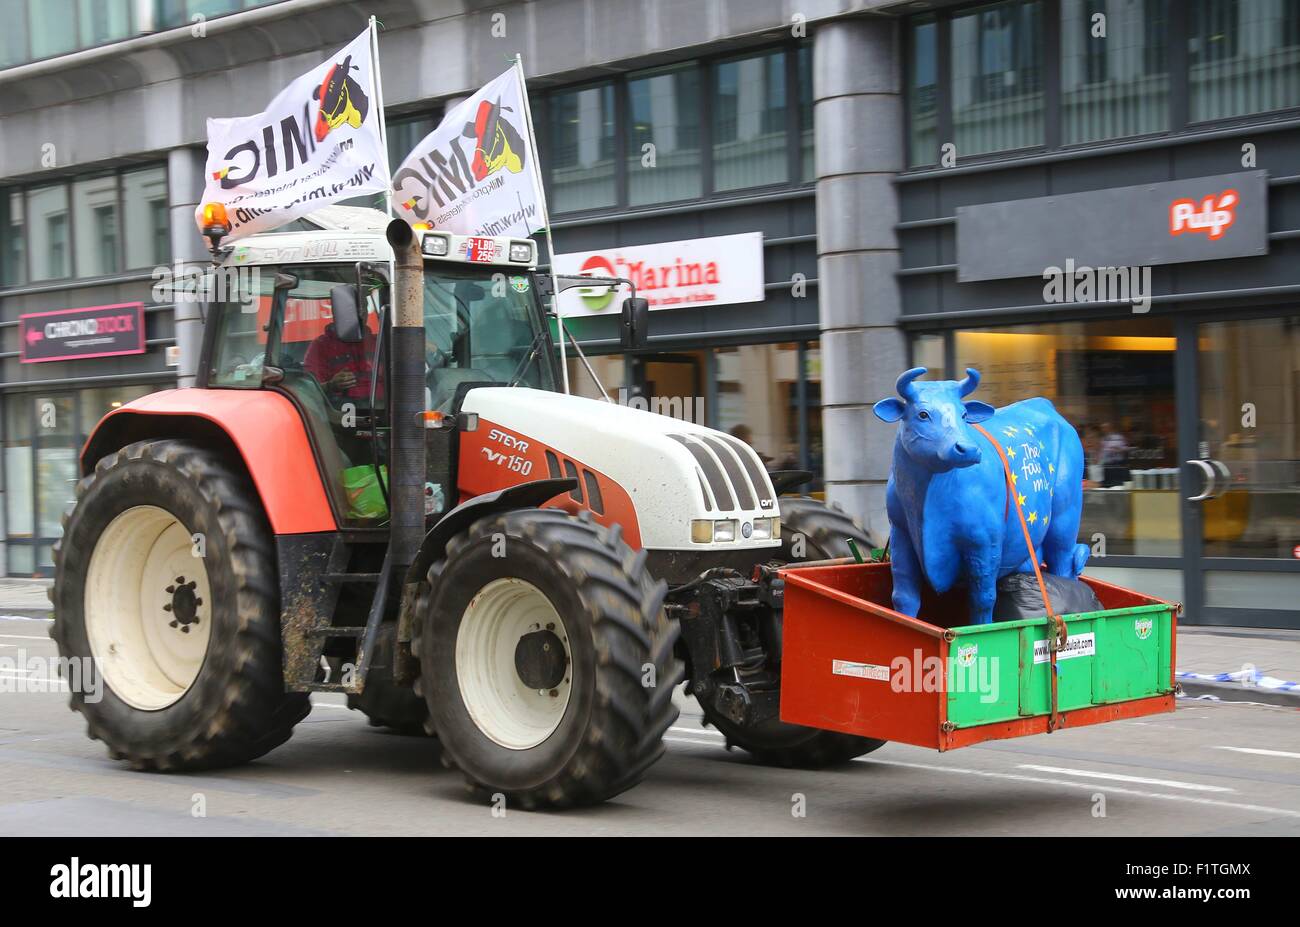 Brüssel, Belgien. 7. Sep, 2015. Ein Traktor ist außerhalb der  EU-Hauptquartier in Brüssel, 7. September 2015 gesehen. Tausende von  europäischen Landwirten und Milcherzeuger, sowie eine große Anzahl von  Traktoren, statt eine Massenkundgebung